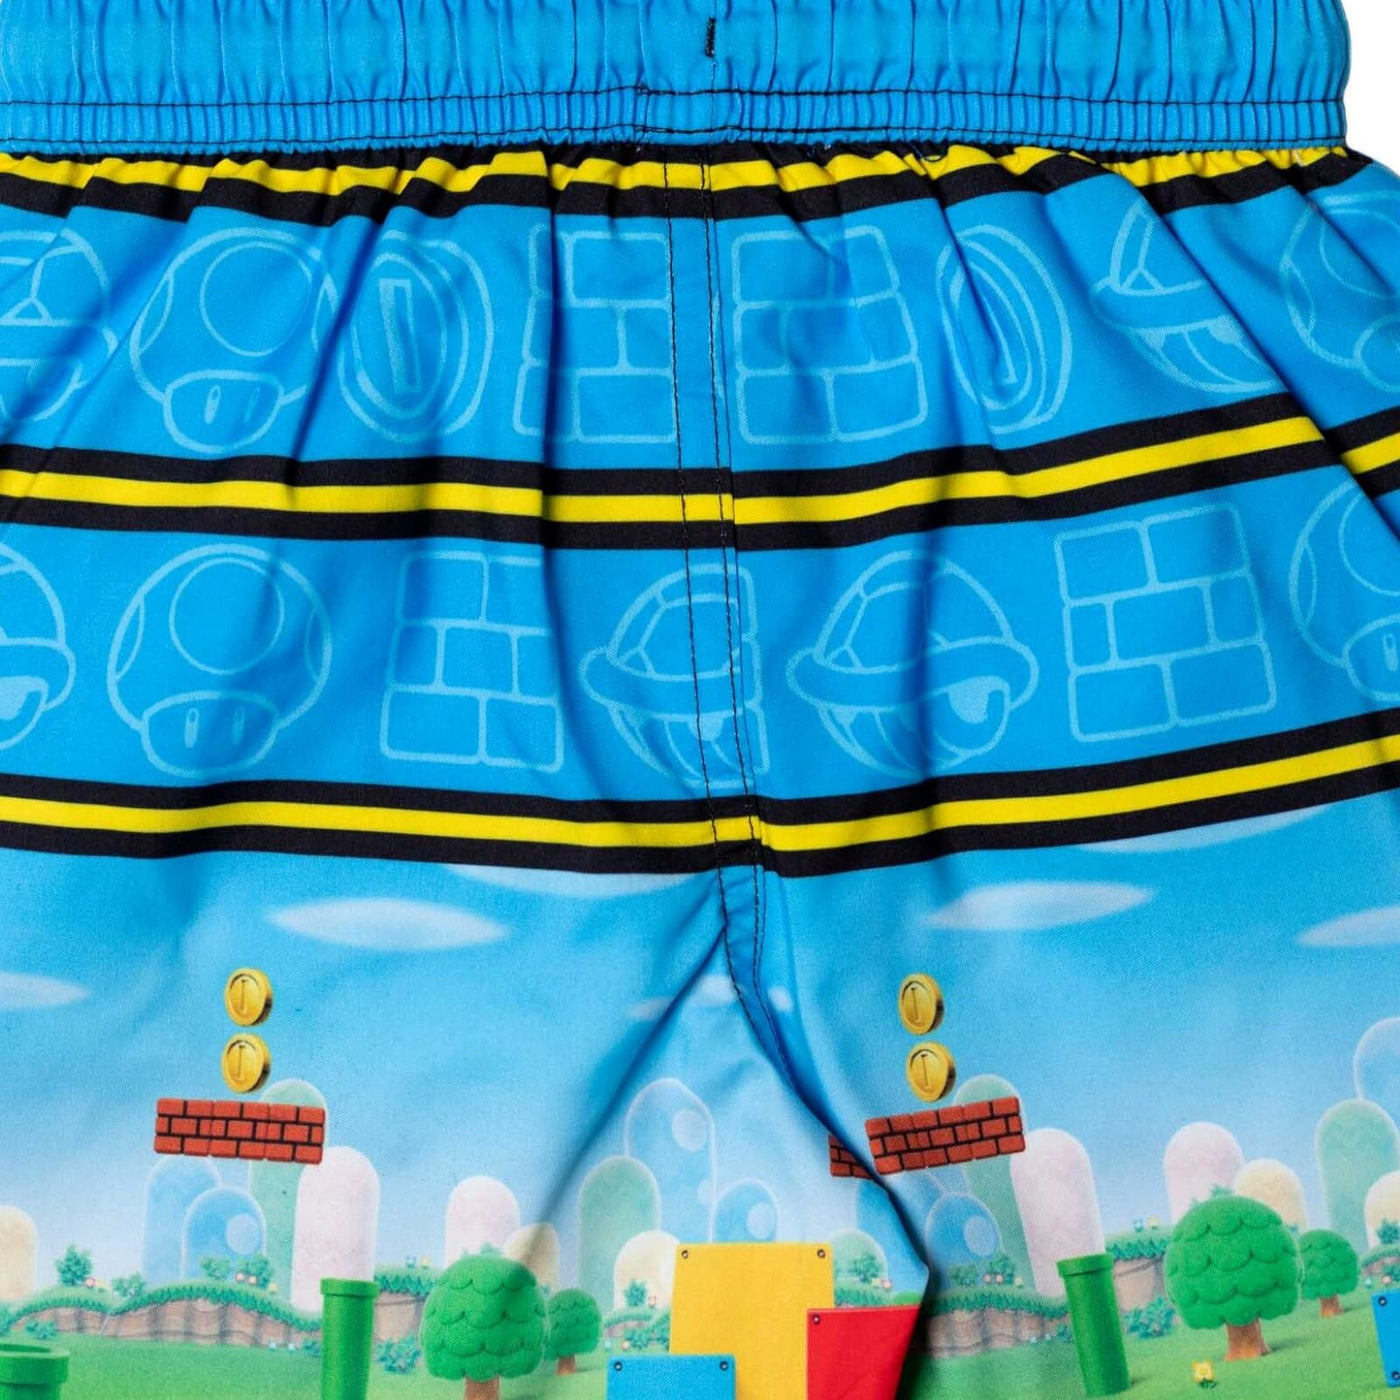 SUPER MARIO Nintendo UPF 50+ Swim Trunks Bathing Suit